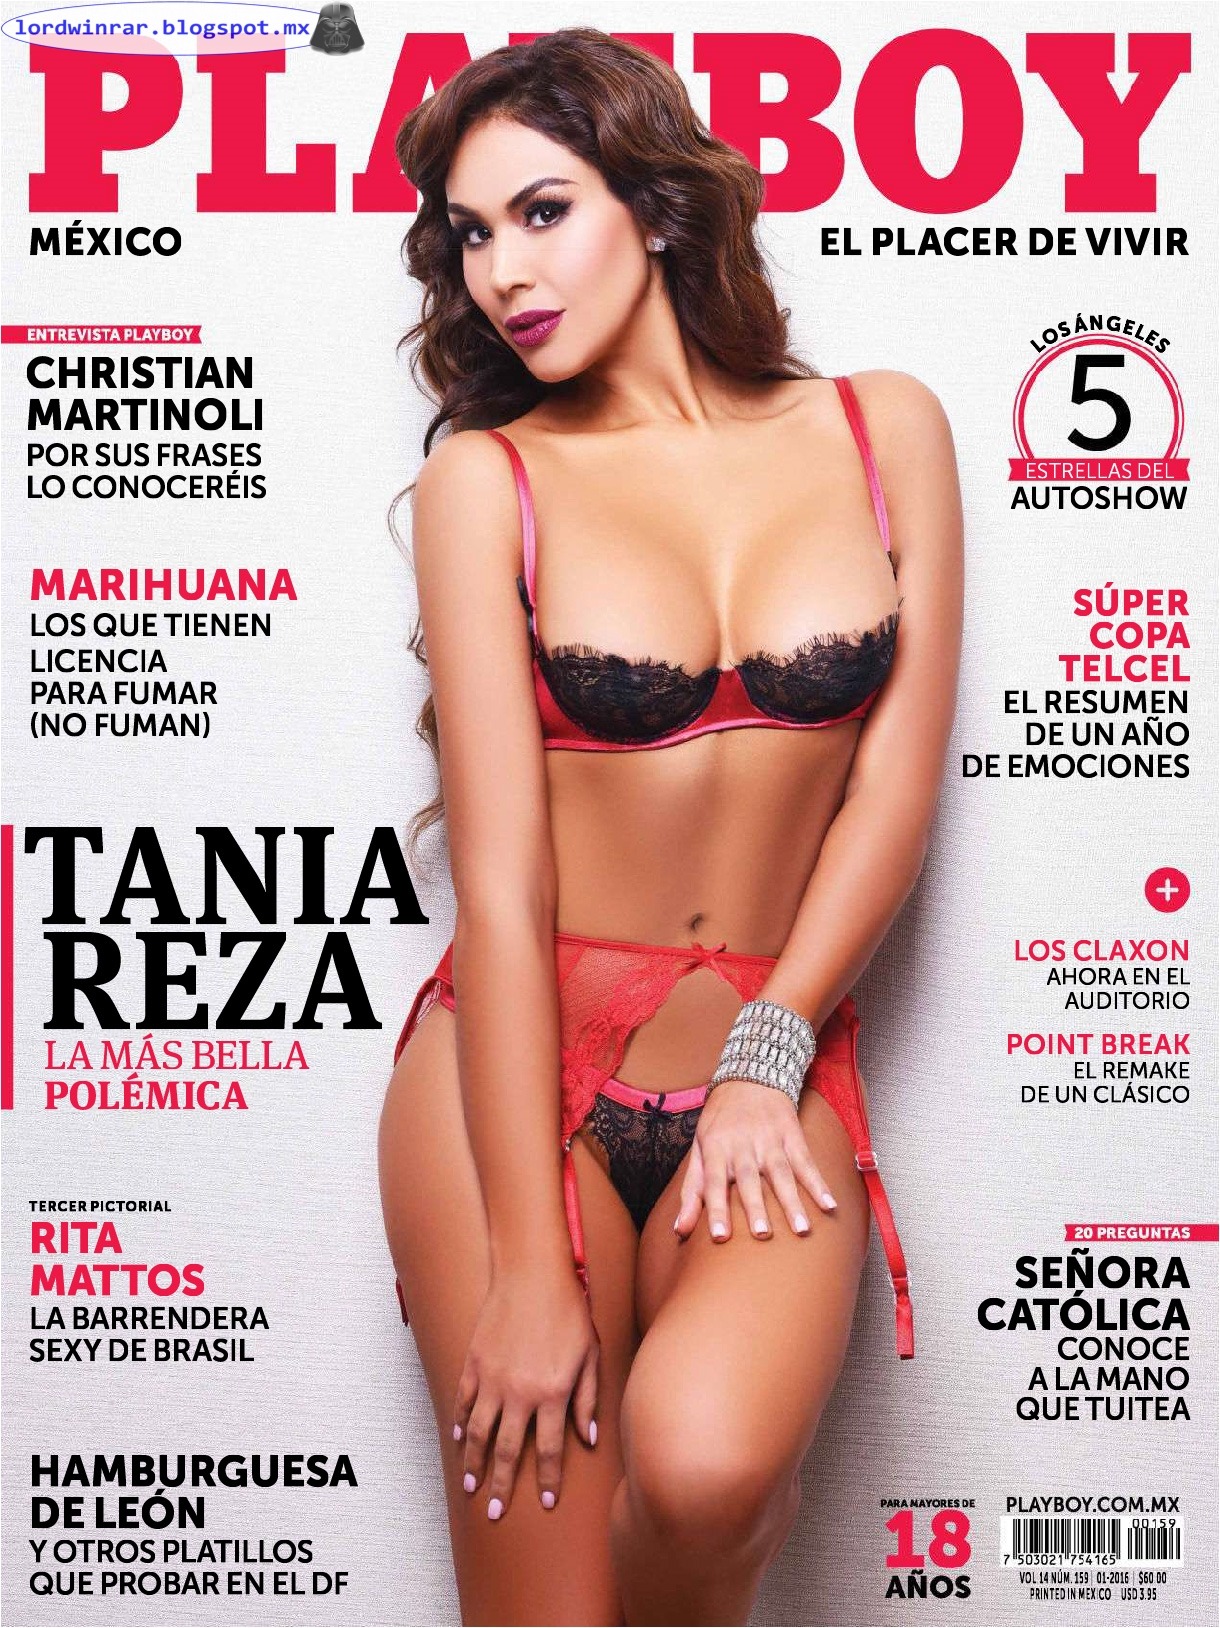 Tania Reza - Playboy Mexico 2016 Enero (53 Fotos HQ)Tania Reza desnuda en la revista